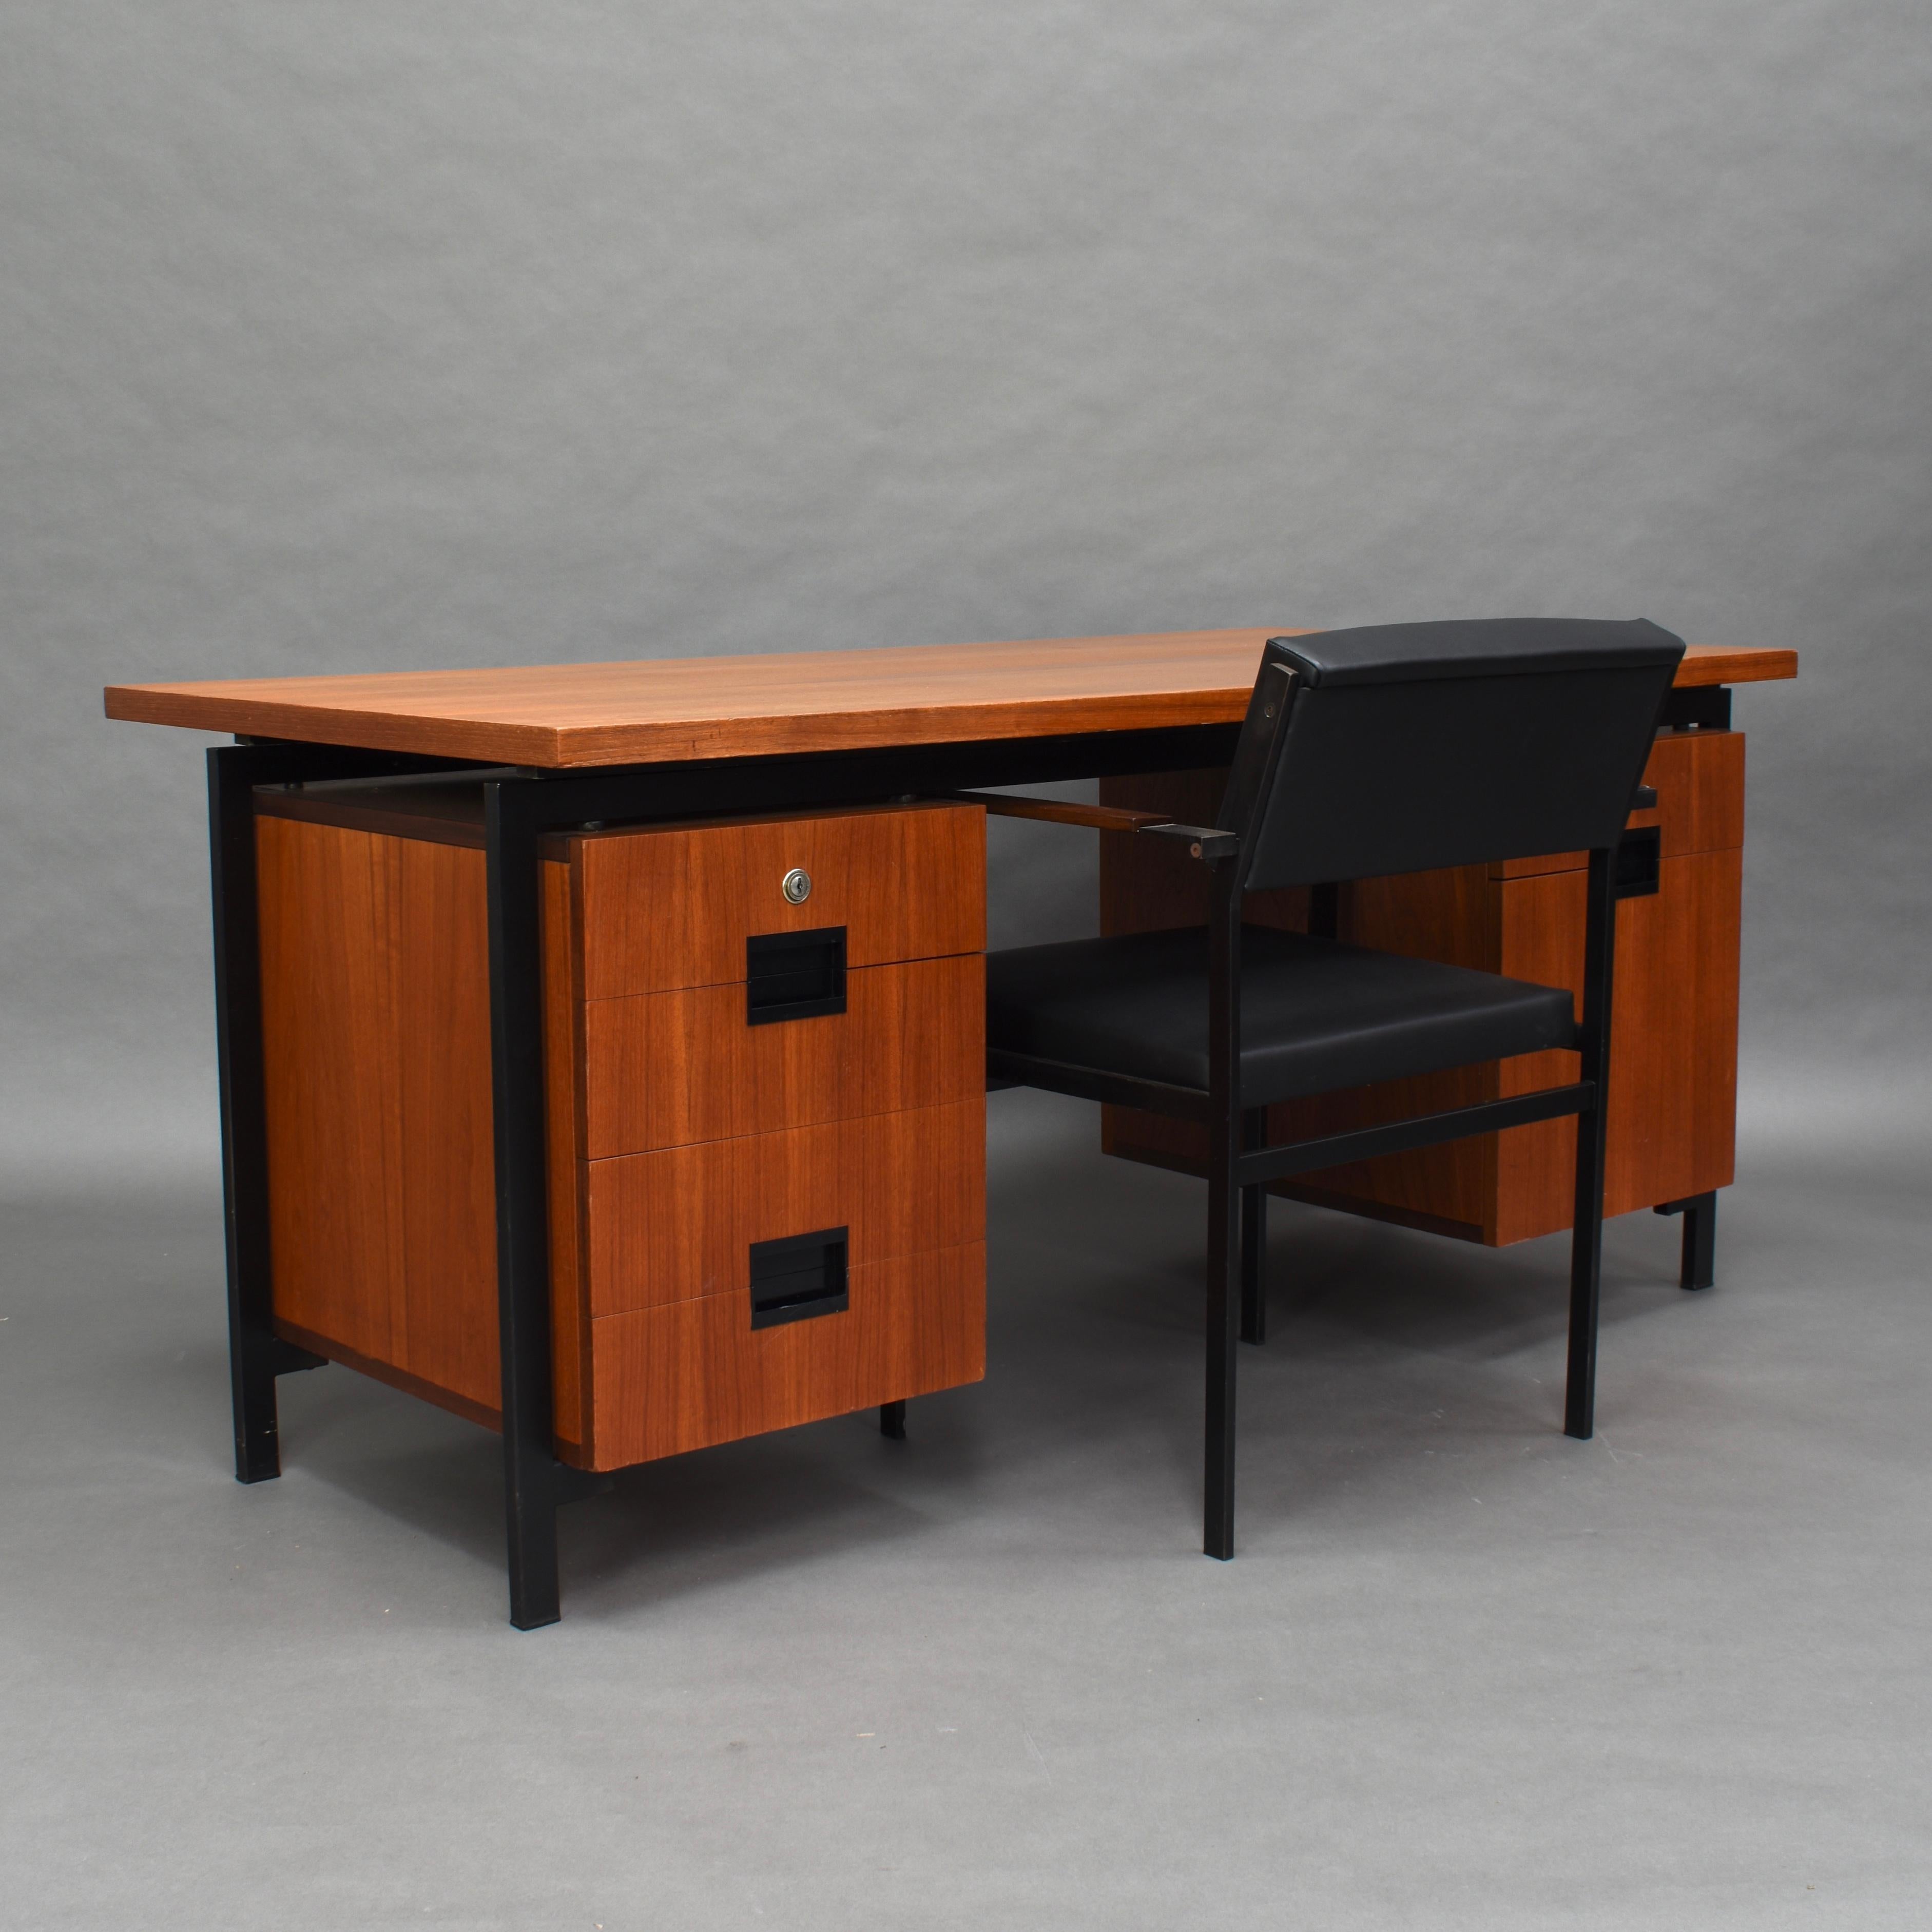 Schreibtisch und Stuhl der japanischen Serie aus Teakholz von Cees Braakman für Pastoe, Niederlande, 1950er Jahre. Sehr cool, wenn man ein passendes Set findet.

Modell EU-02 Schreibtisch und FM-17 Sessel. Auf dem Schreibtisch befindet sich noch